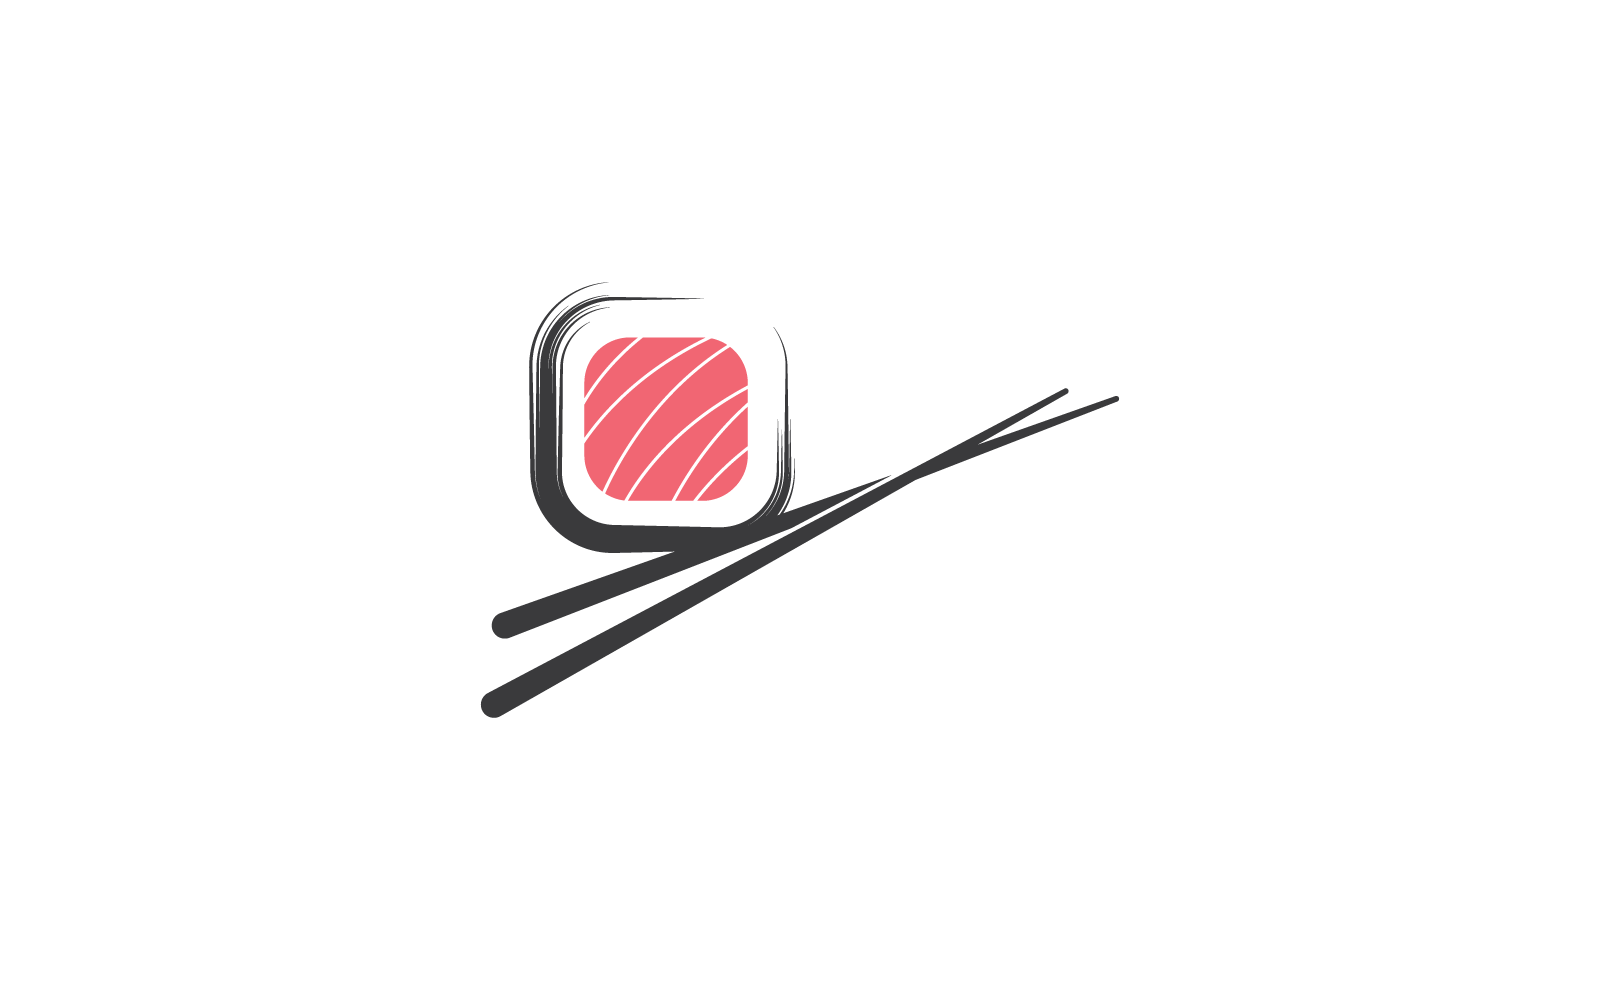 Návrh loga moderní restaurace sushi